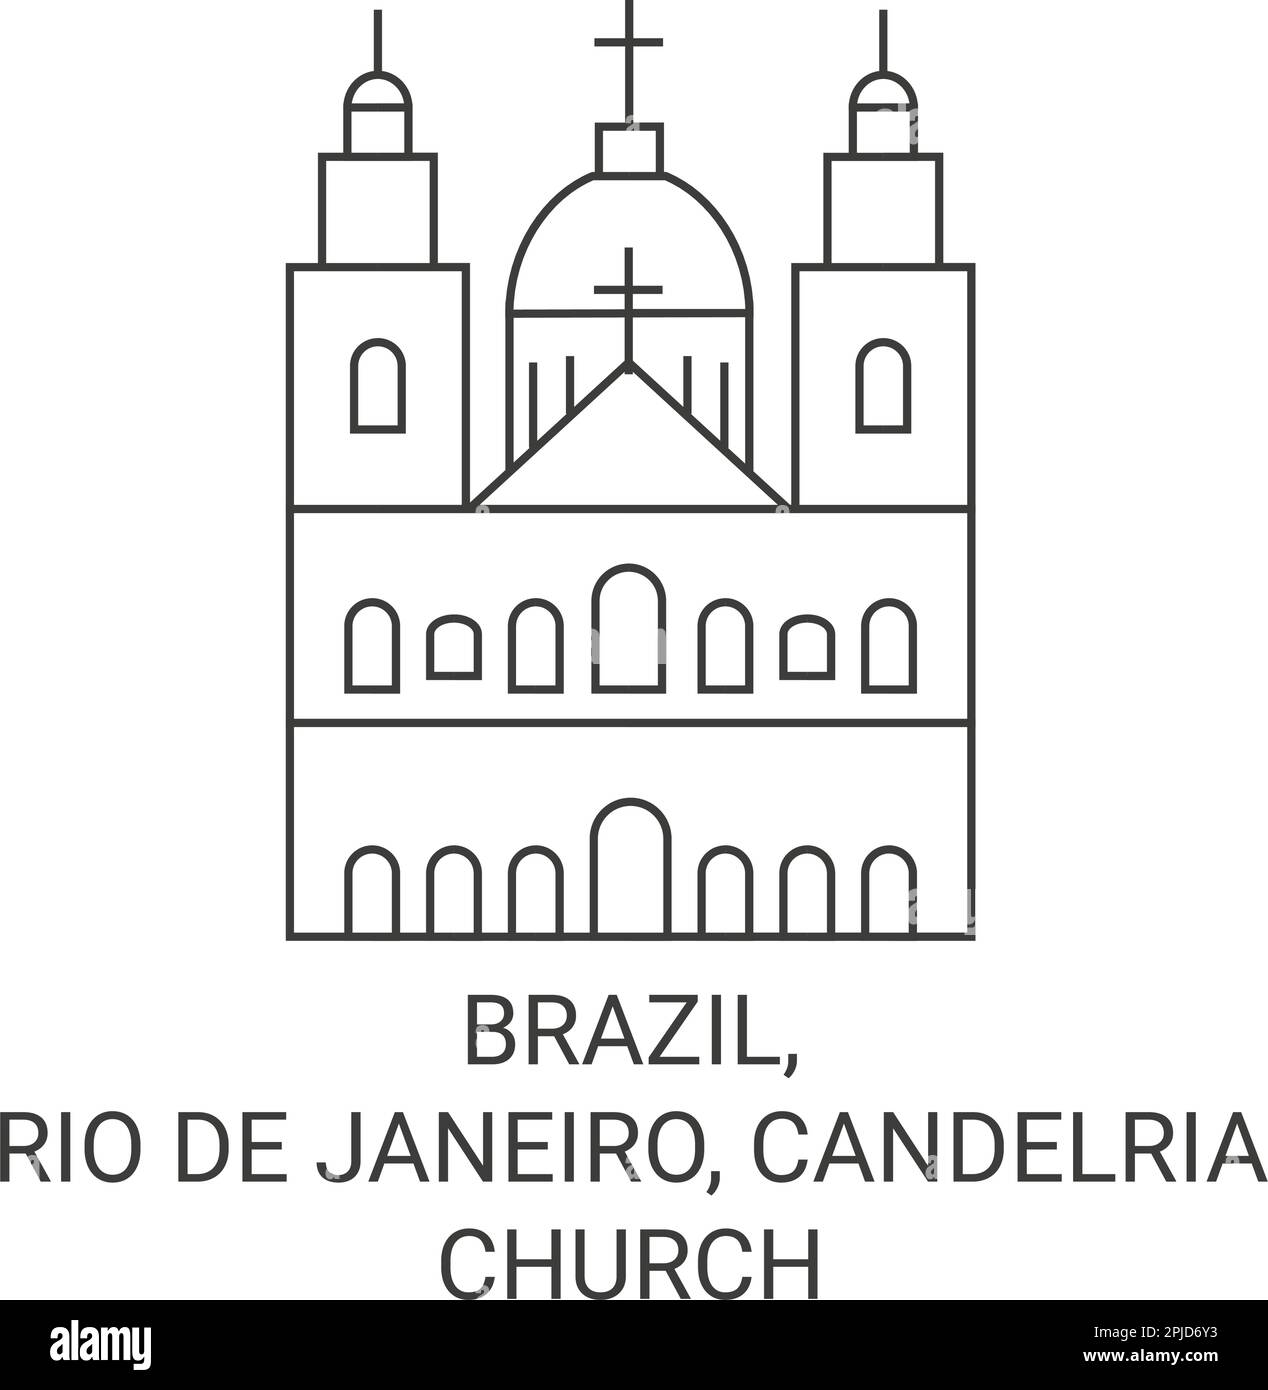 Brazil, Rio De Janeiro, Candelria Church travel landmark vector illustration Stock Vector